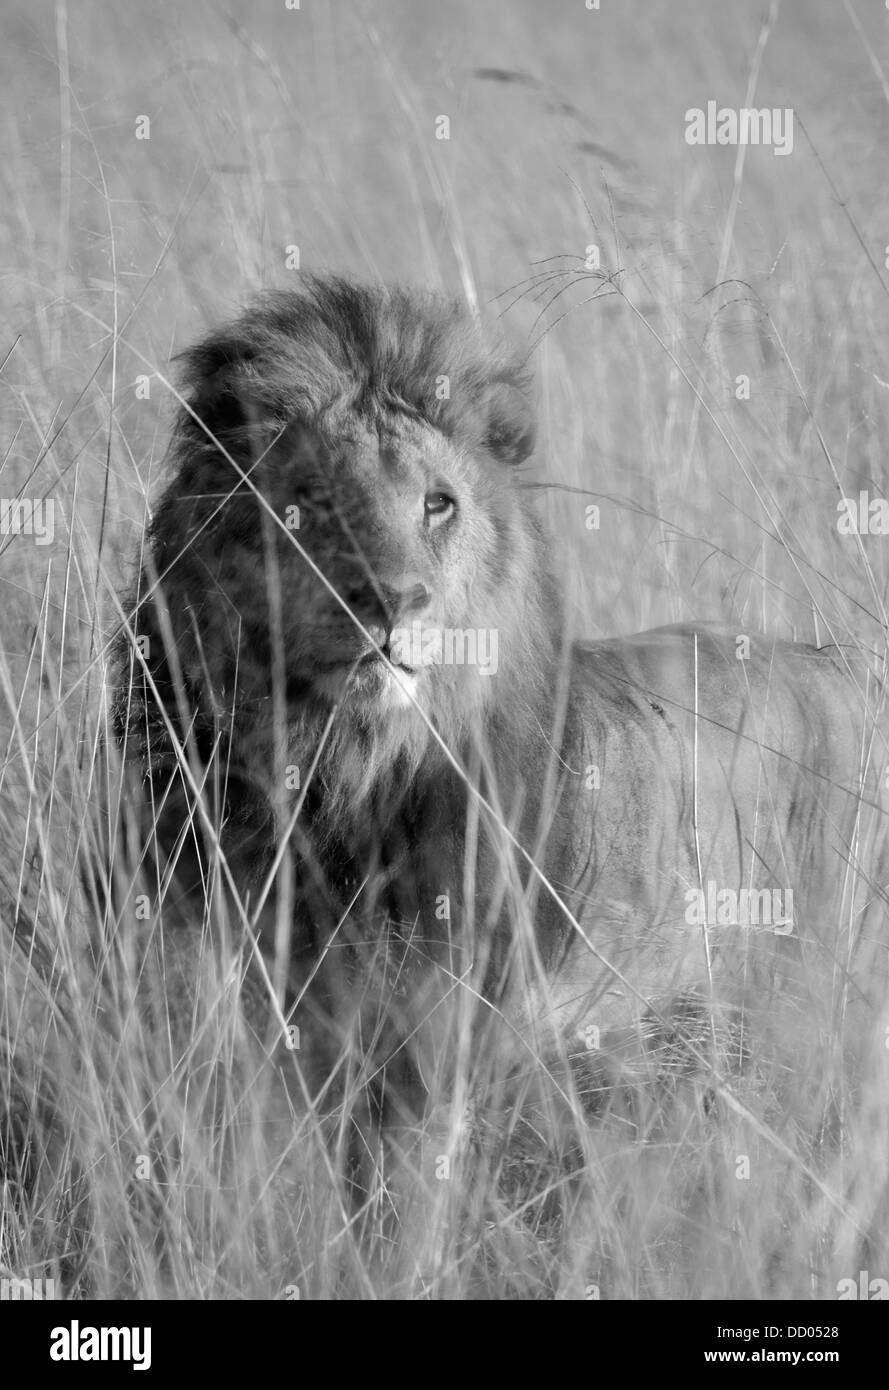 L'African Lion (Panthera leo) de sexe masculin dans l'herbe haute, Okavango Delta, Botswana, NOIR ET BLANC Banque D'Images